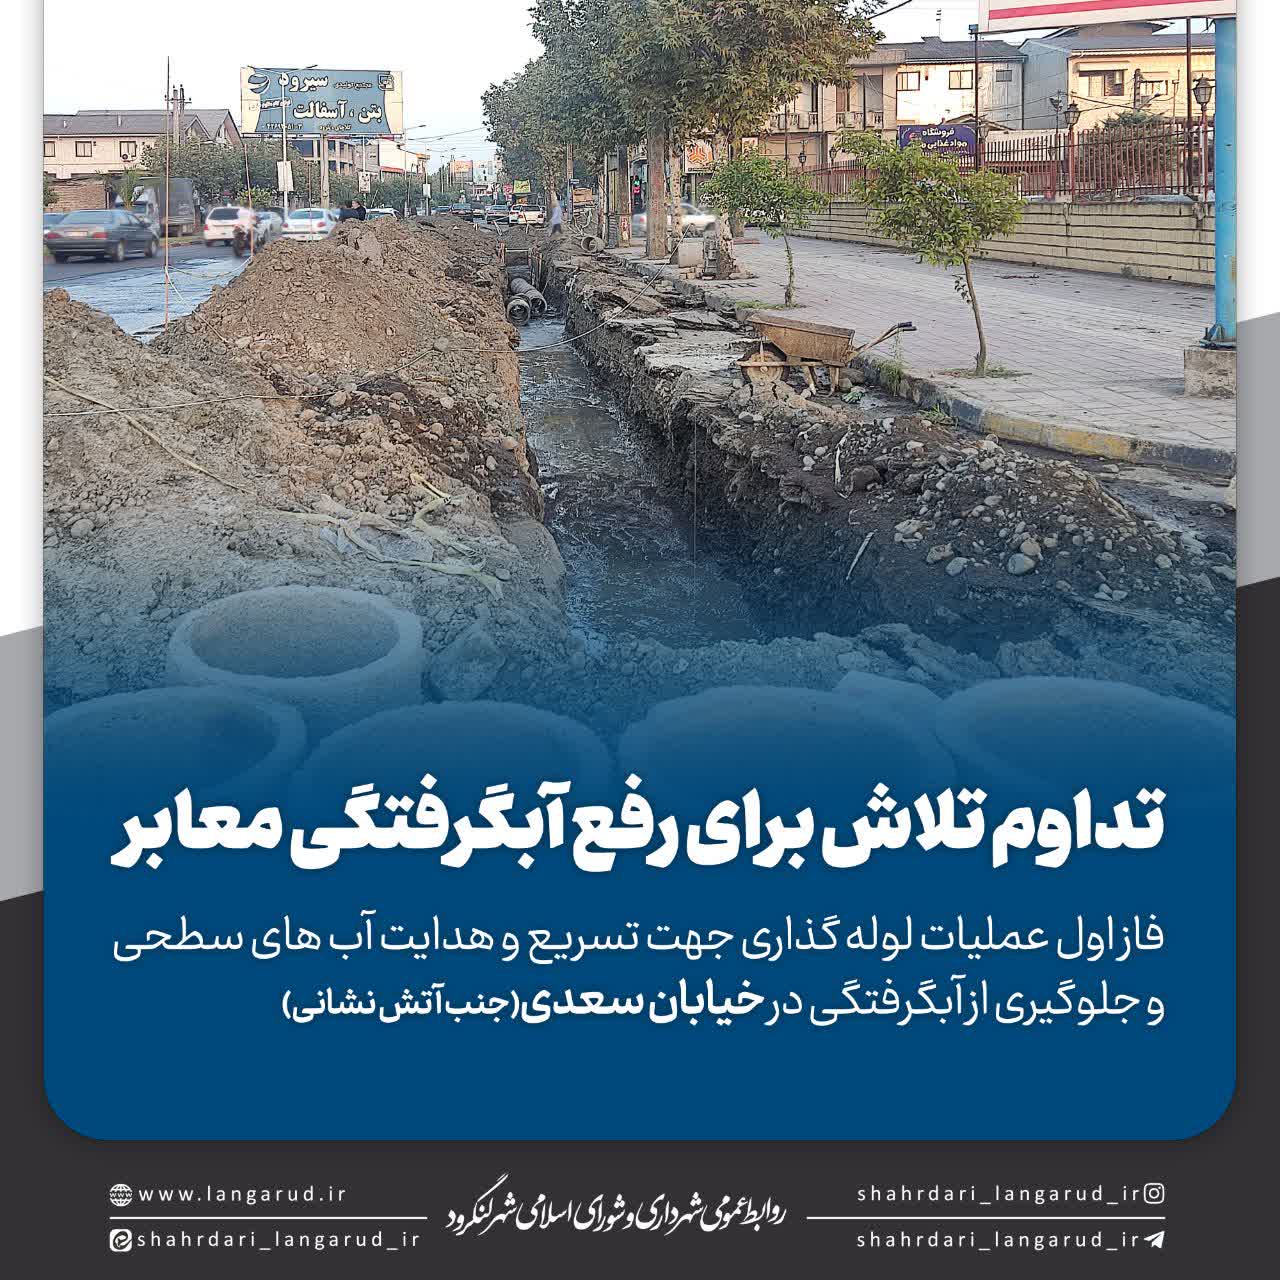 لوله گذاری و جلوگیری از آبگرفتگی در خیابان سعدی